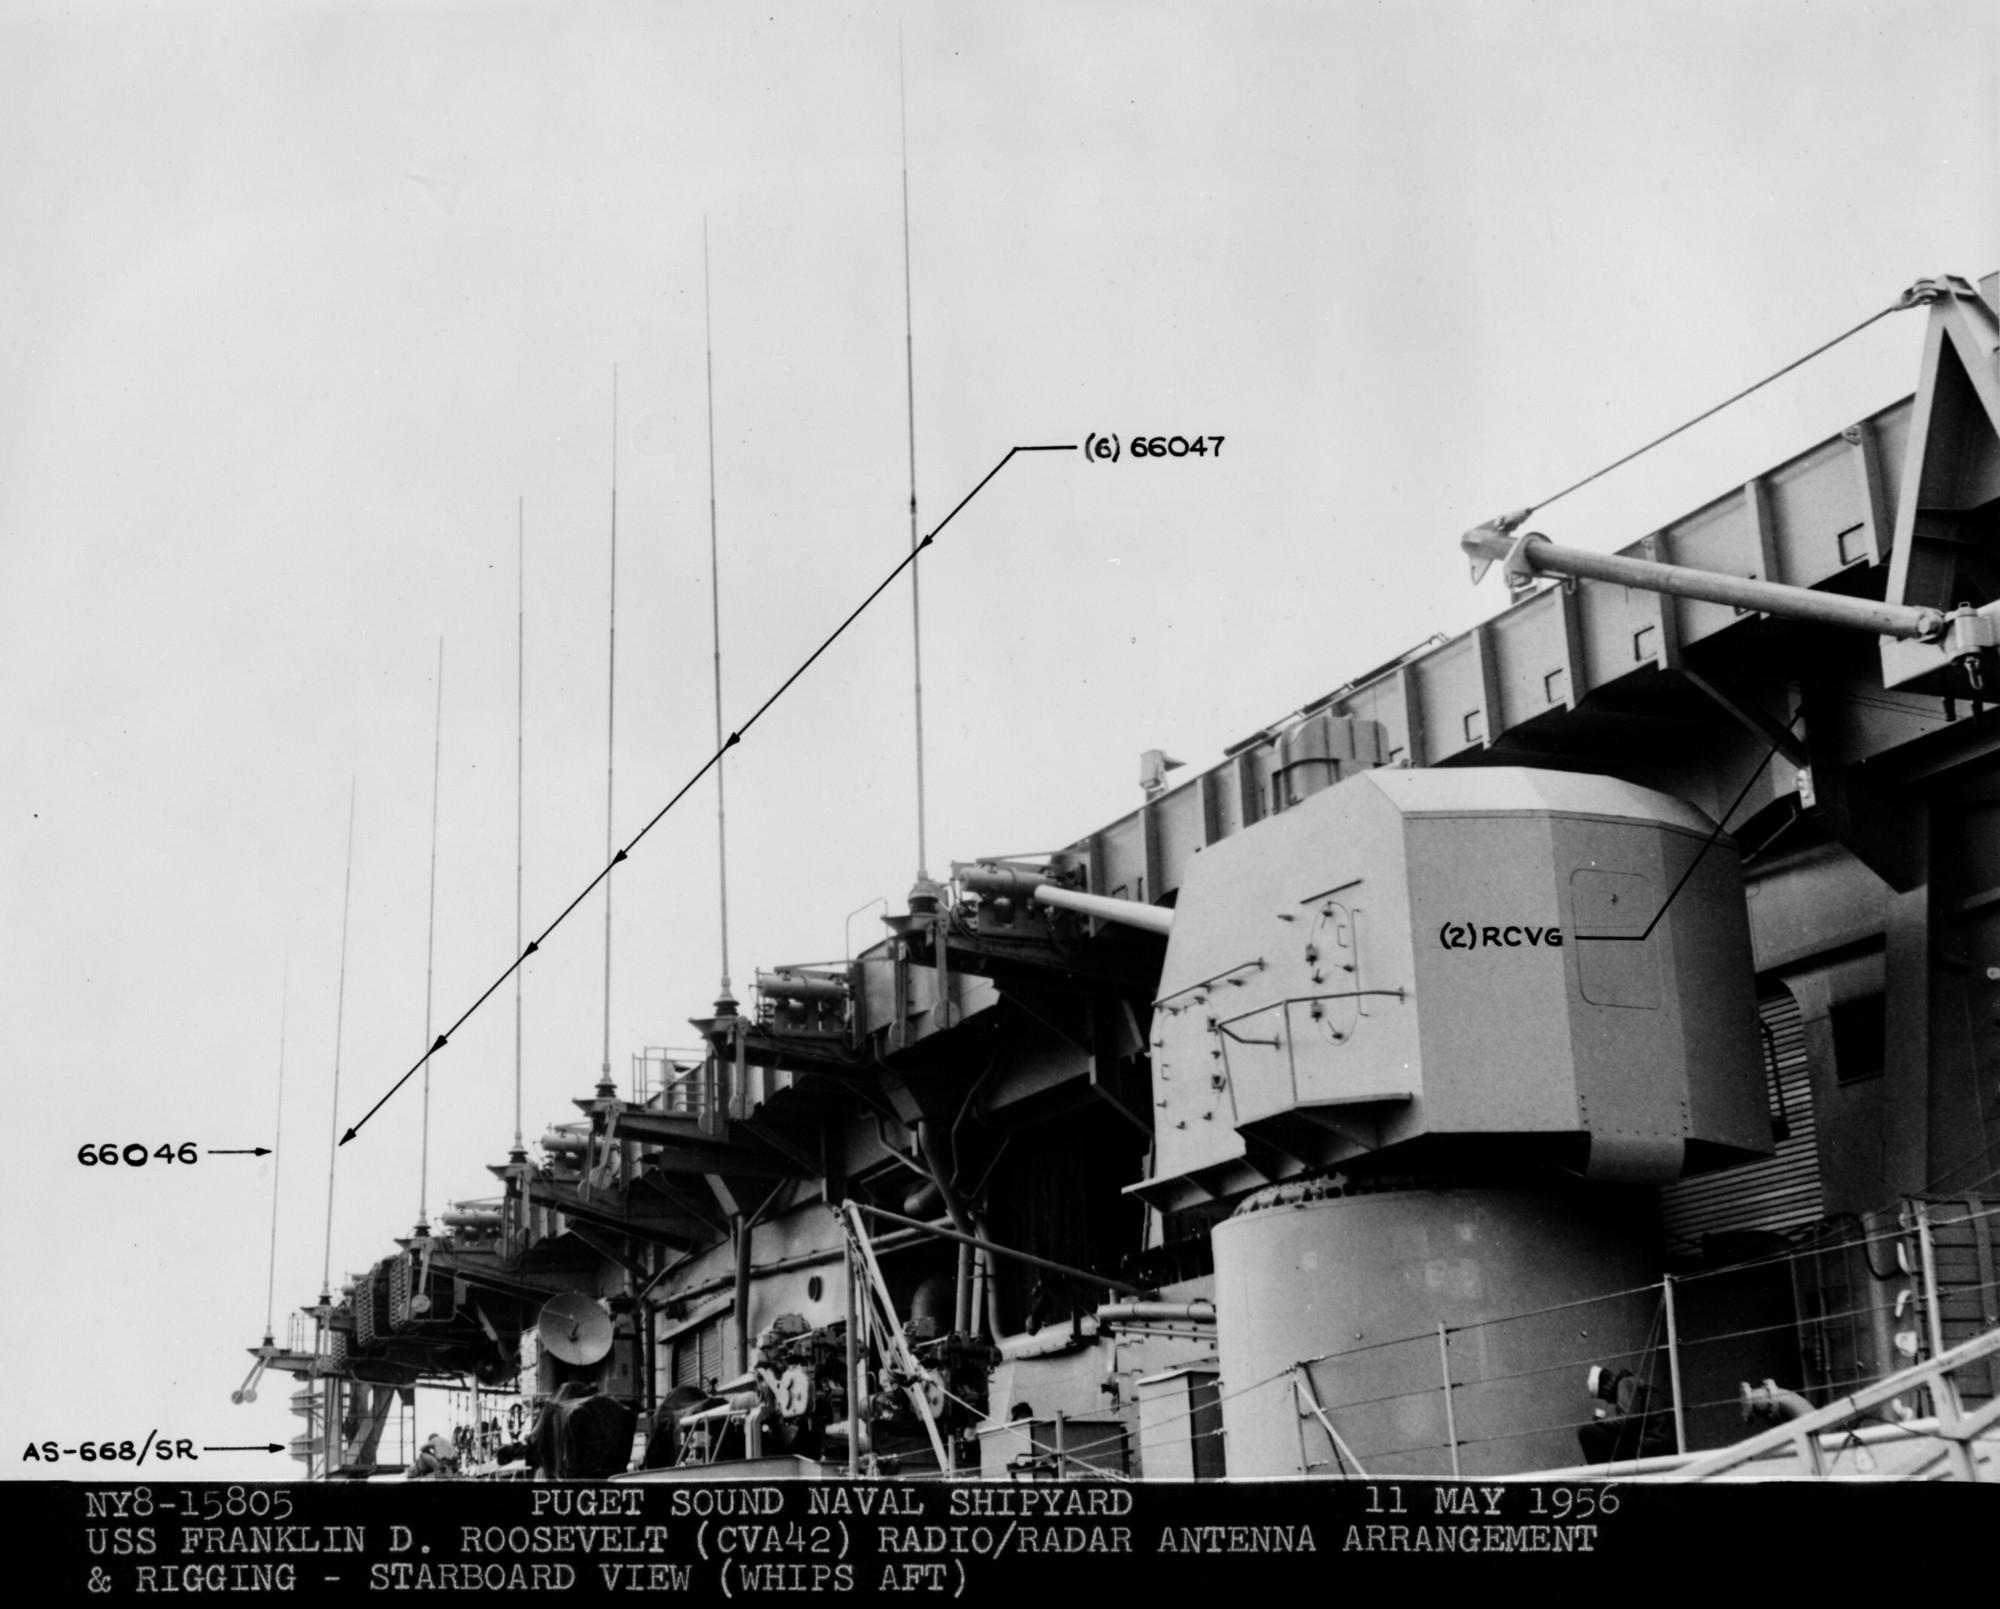 cva-42 uss franklin d. roosevelt midway class aircraft carrier 64